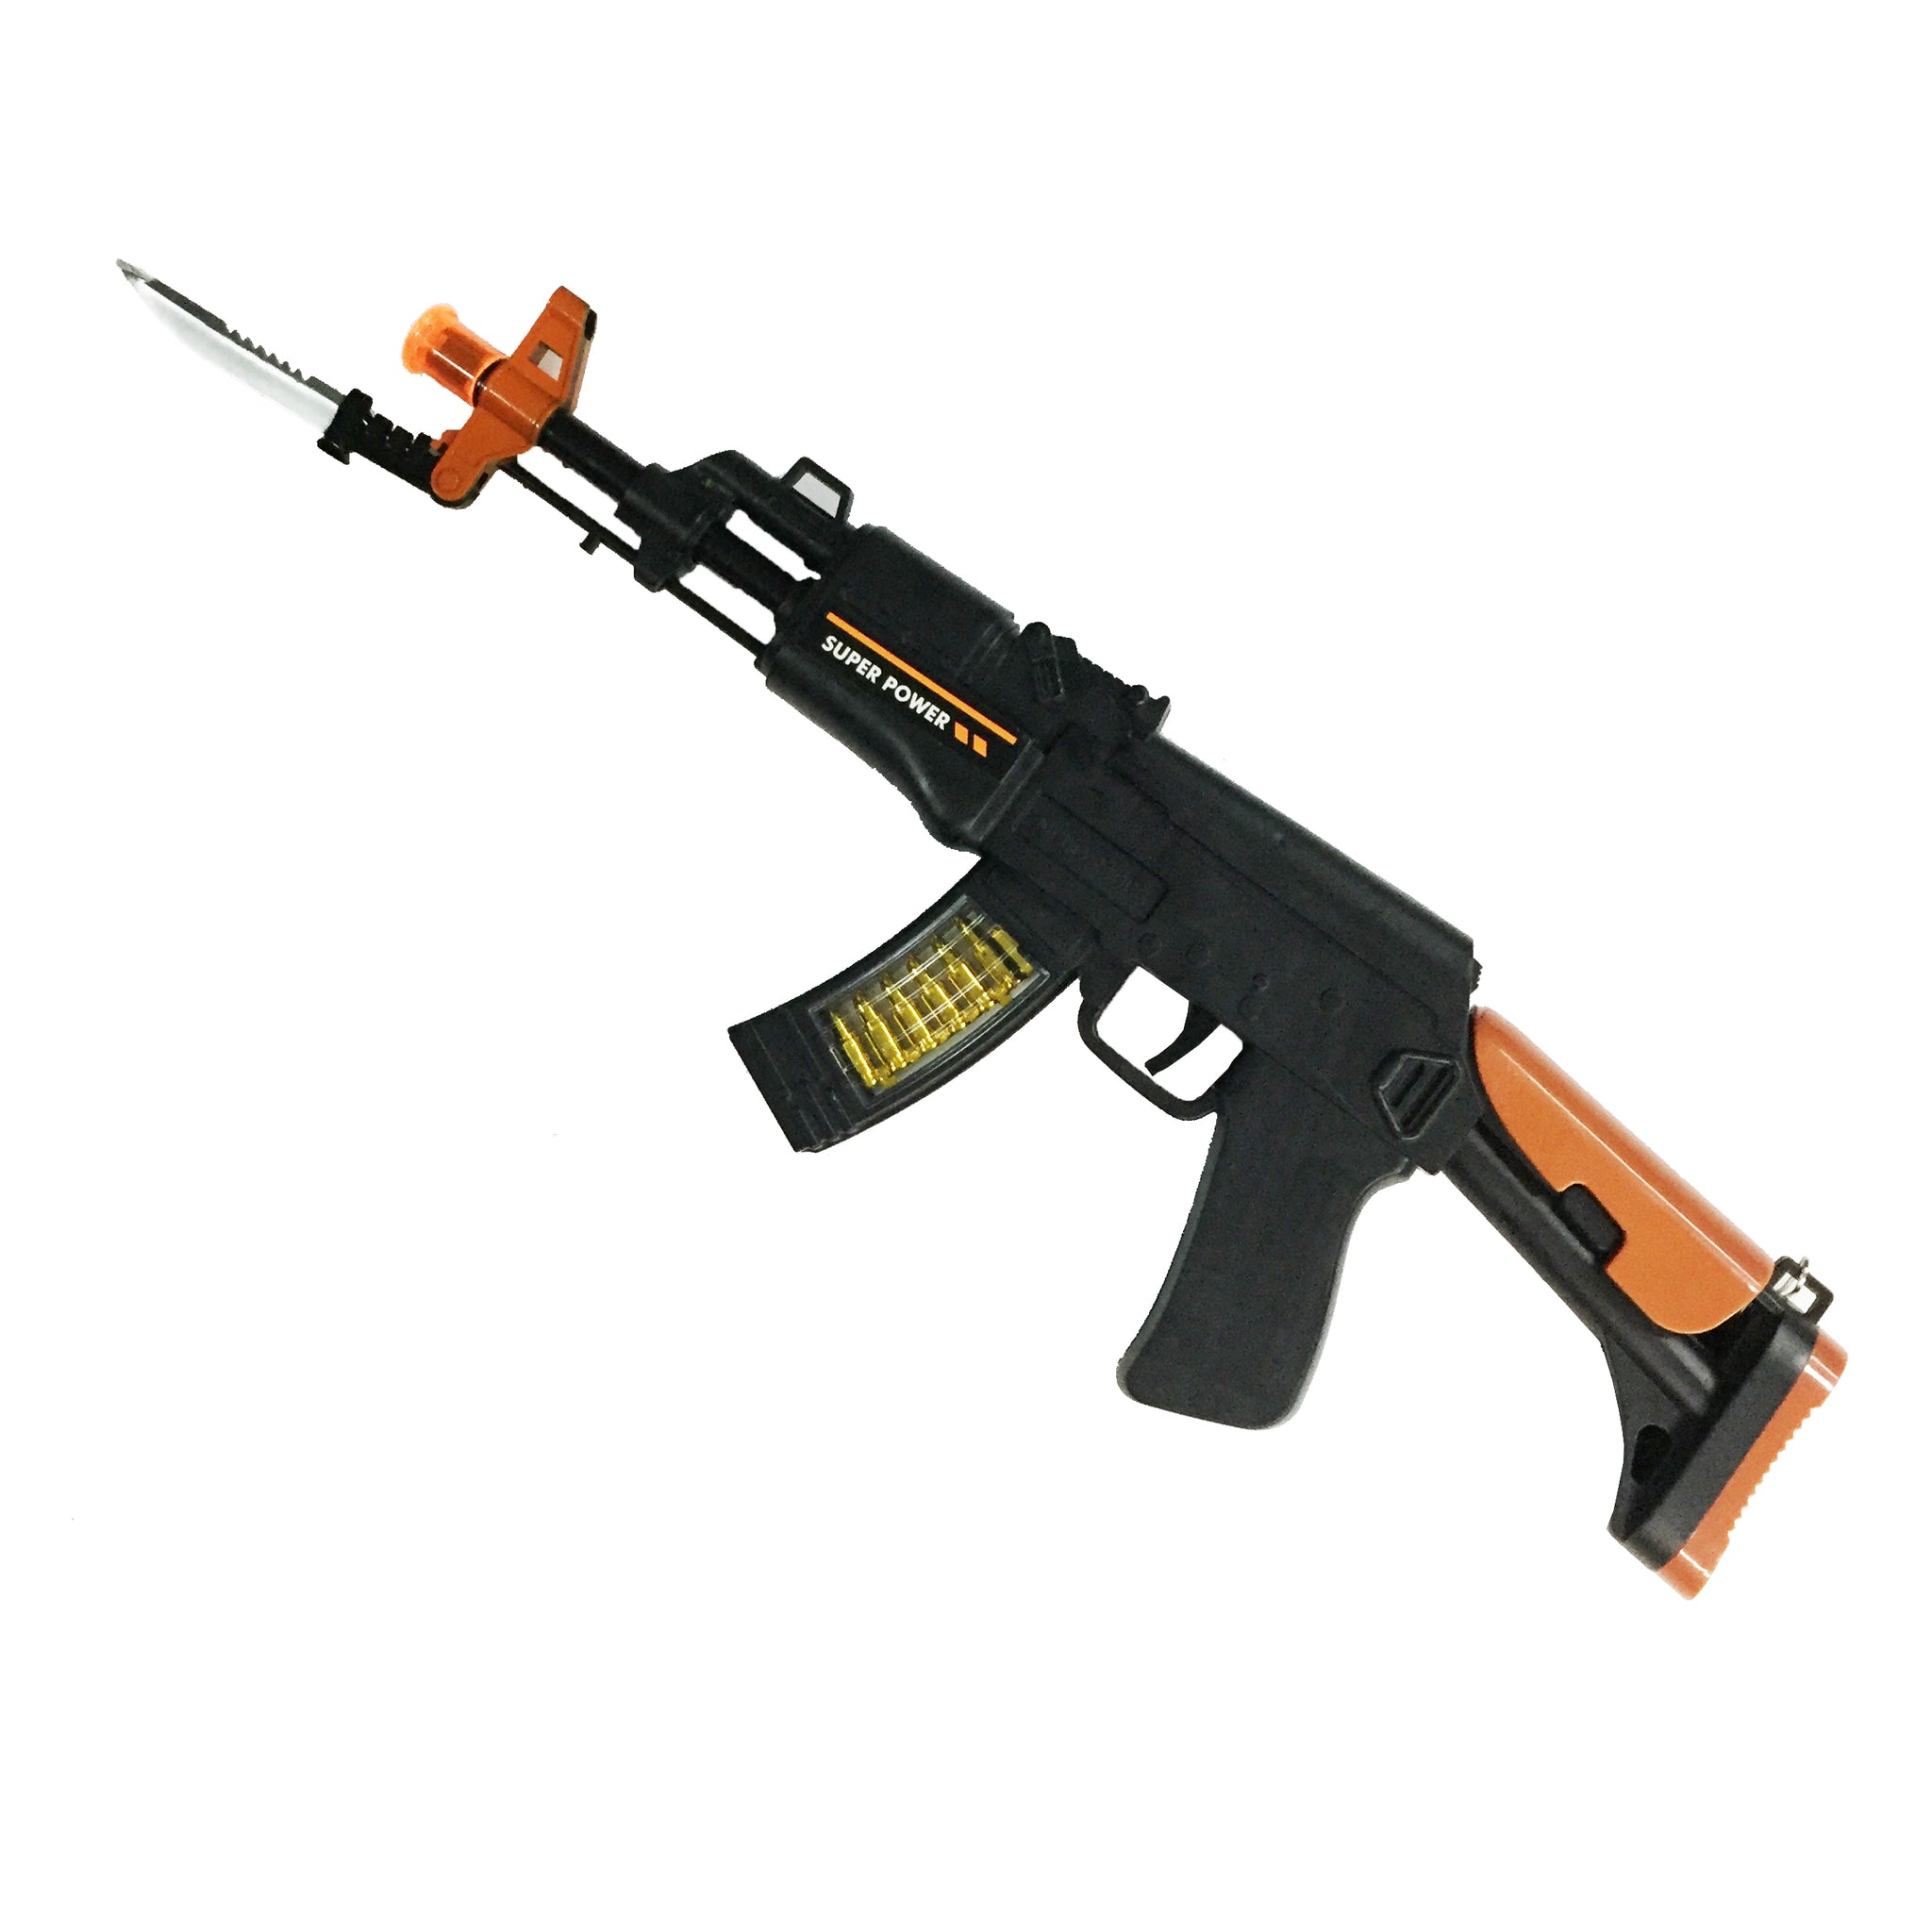 LED Toy Gun AK47 w/ Sound